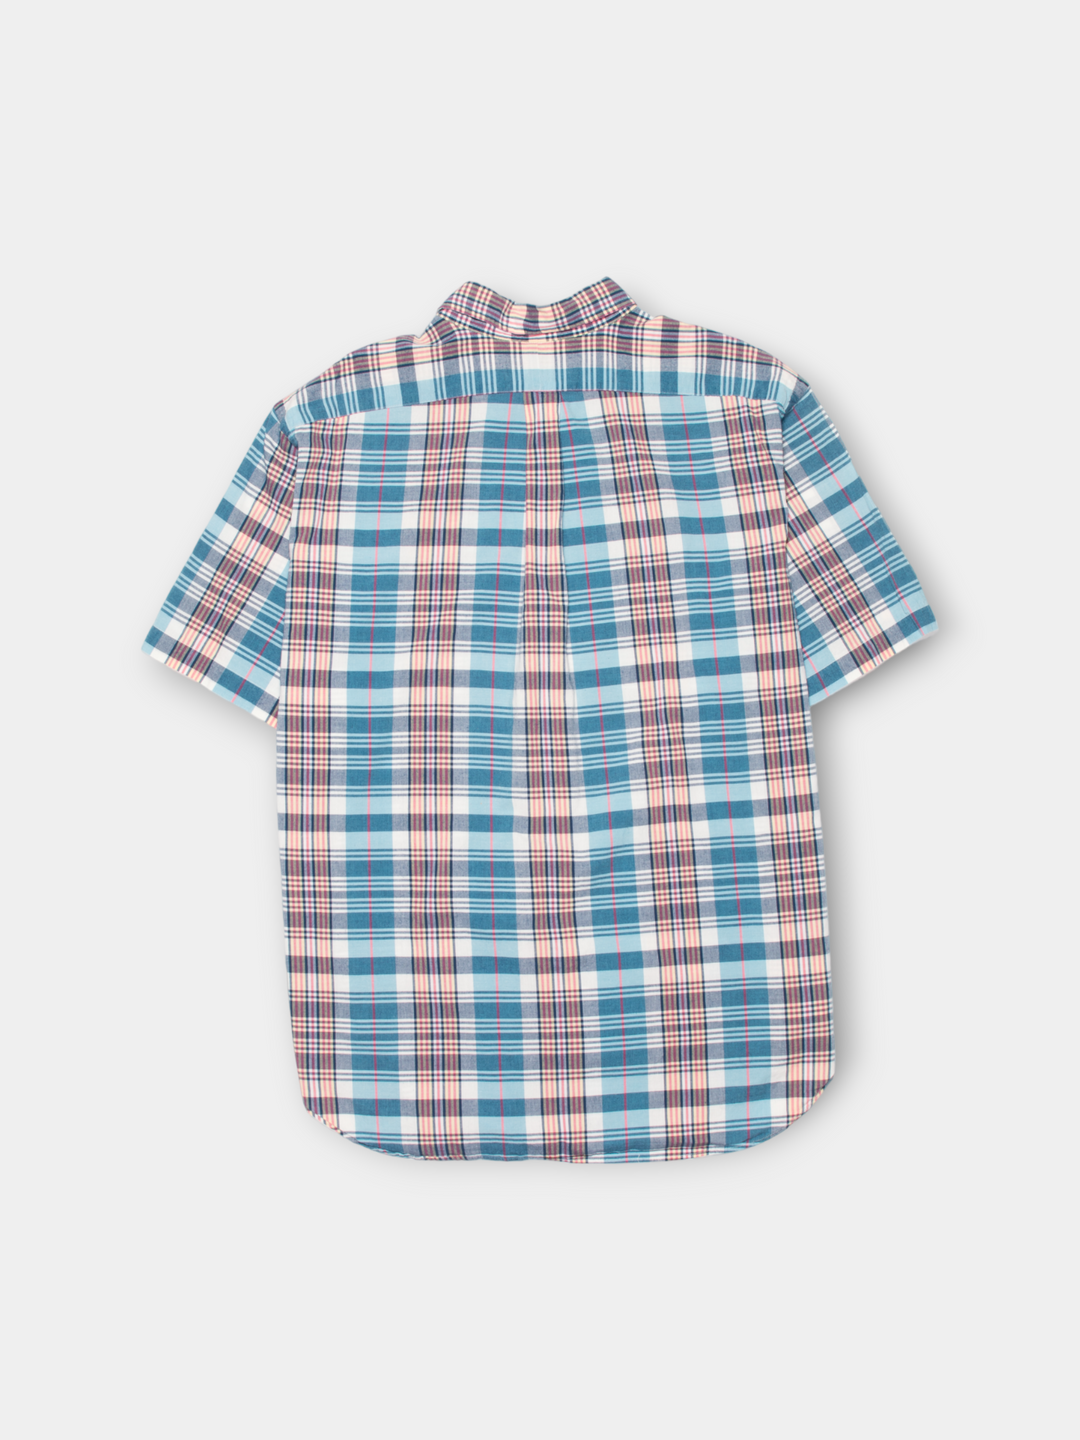 90s Ralph Lauren Short Sleeve Shirt (XXL)